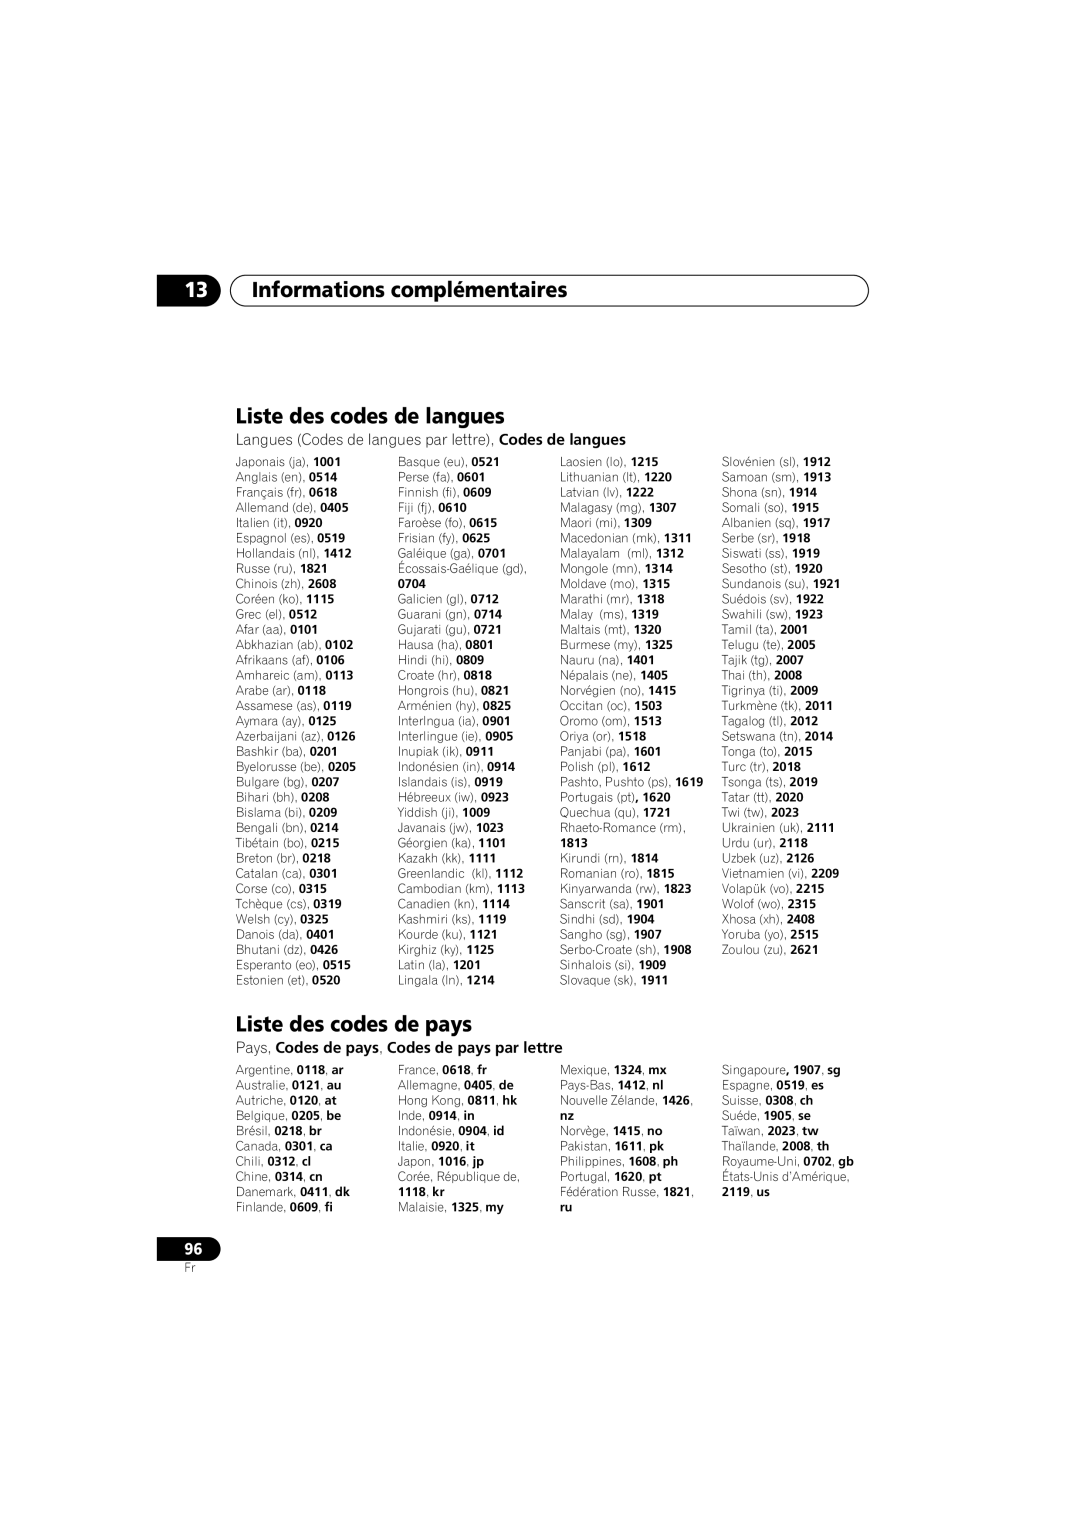 Pioneer S-DV990ST, S-DV99ST manual Liste des codes de langues, Liste des codes de pays, 13Informations complémentaires 